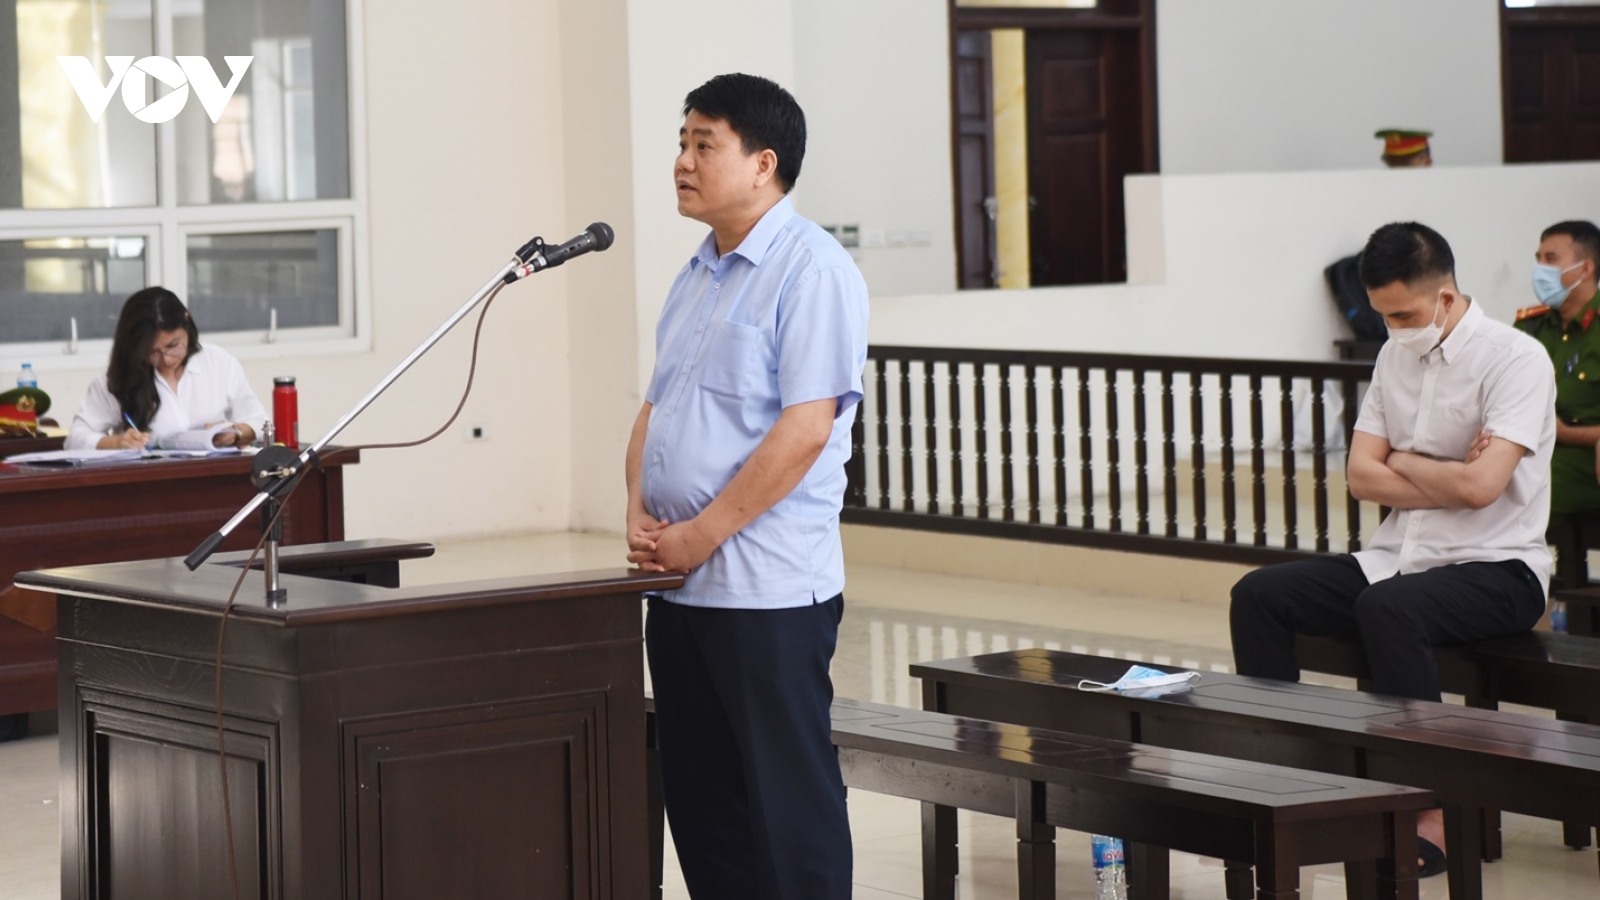 Bị cáo Nguyễn Đức Chung và đồng phạm được hủy lệnh kê biên những tài sản nào?